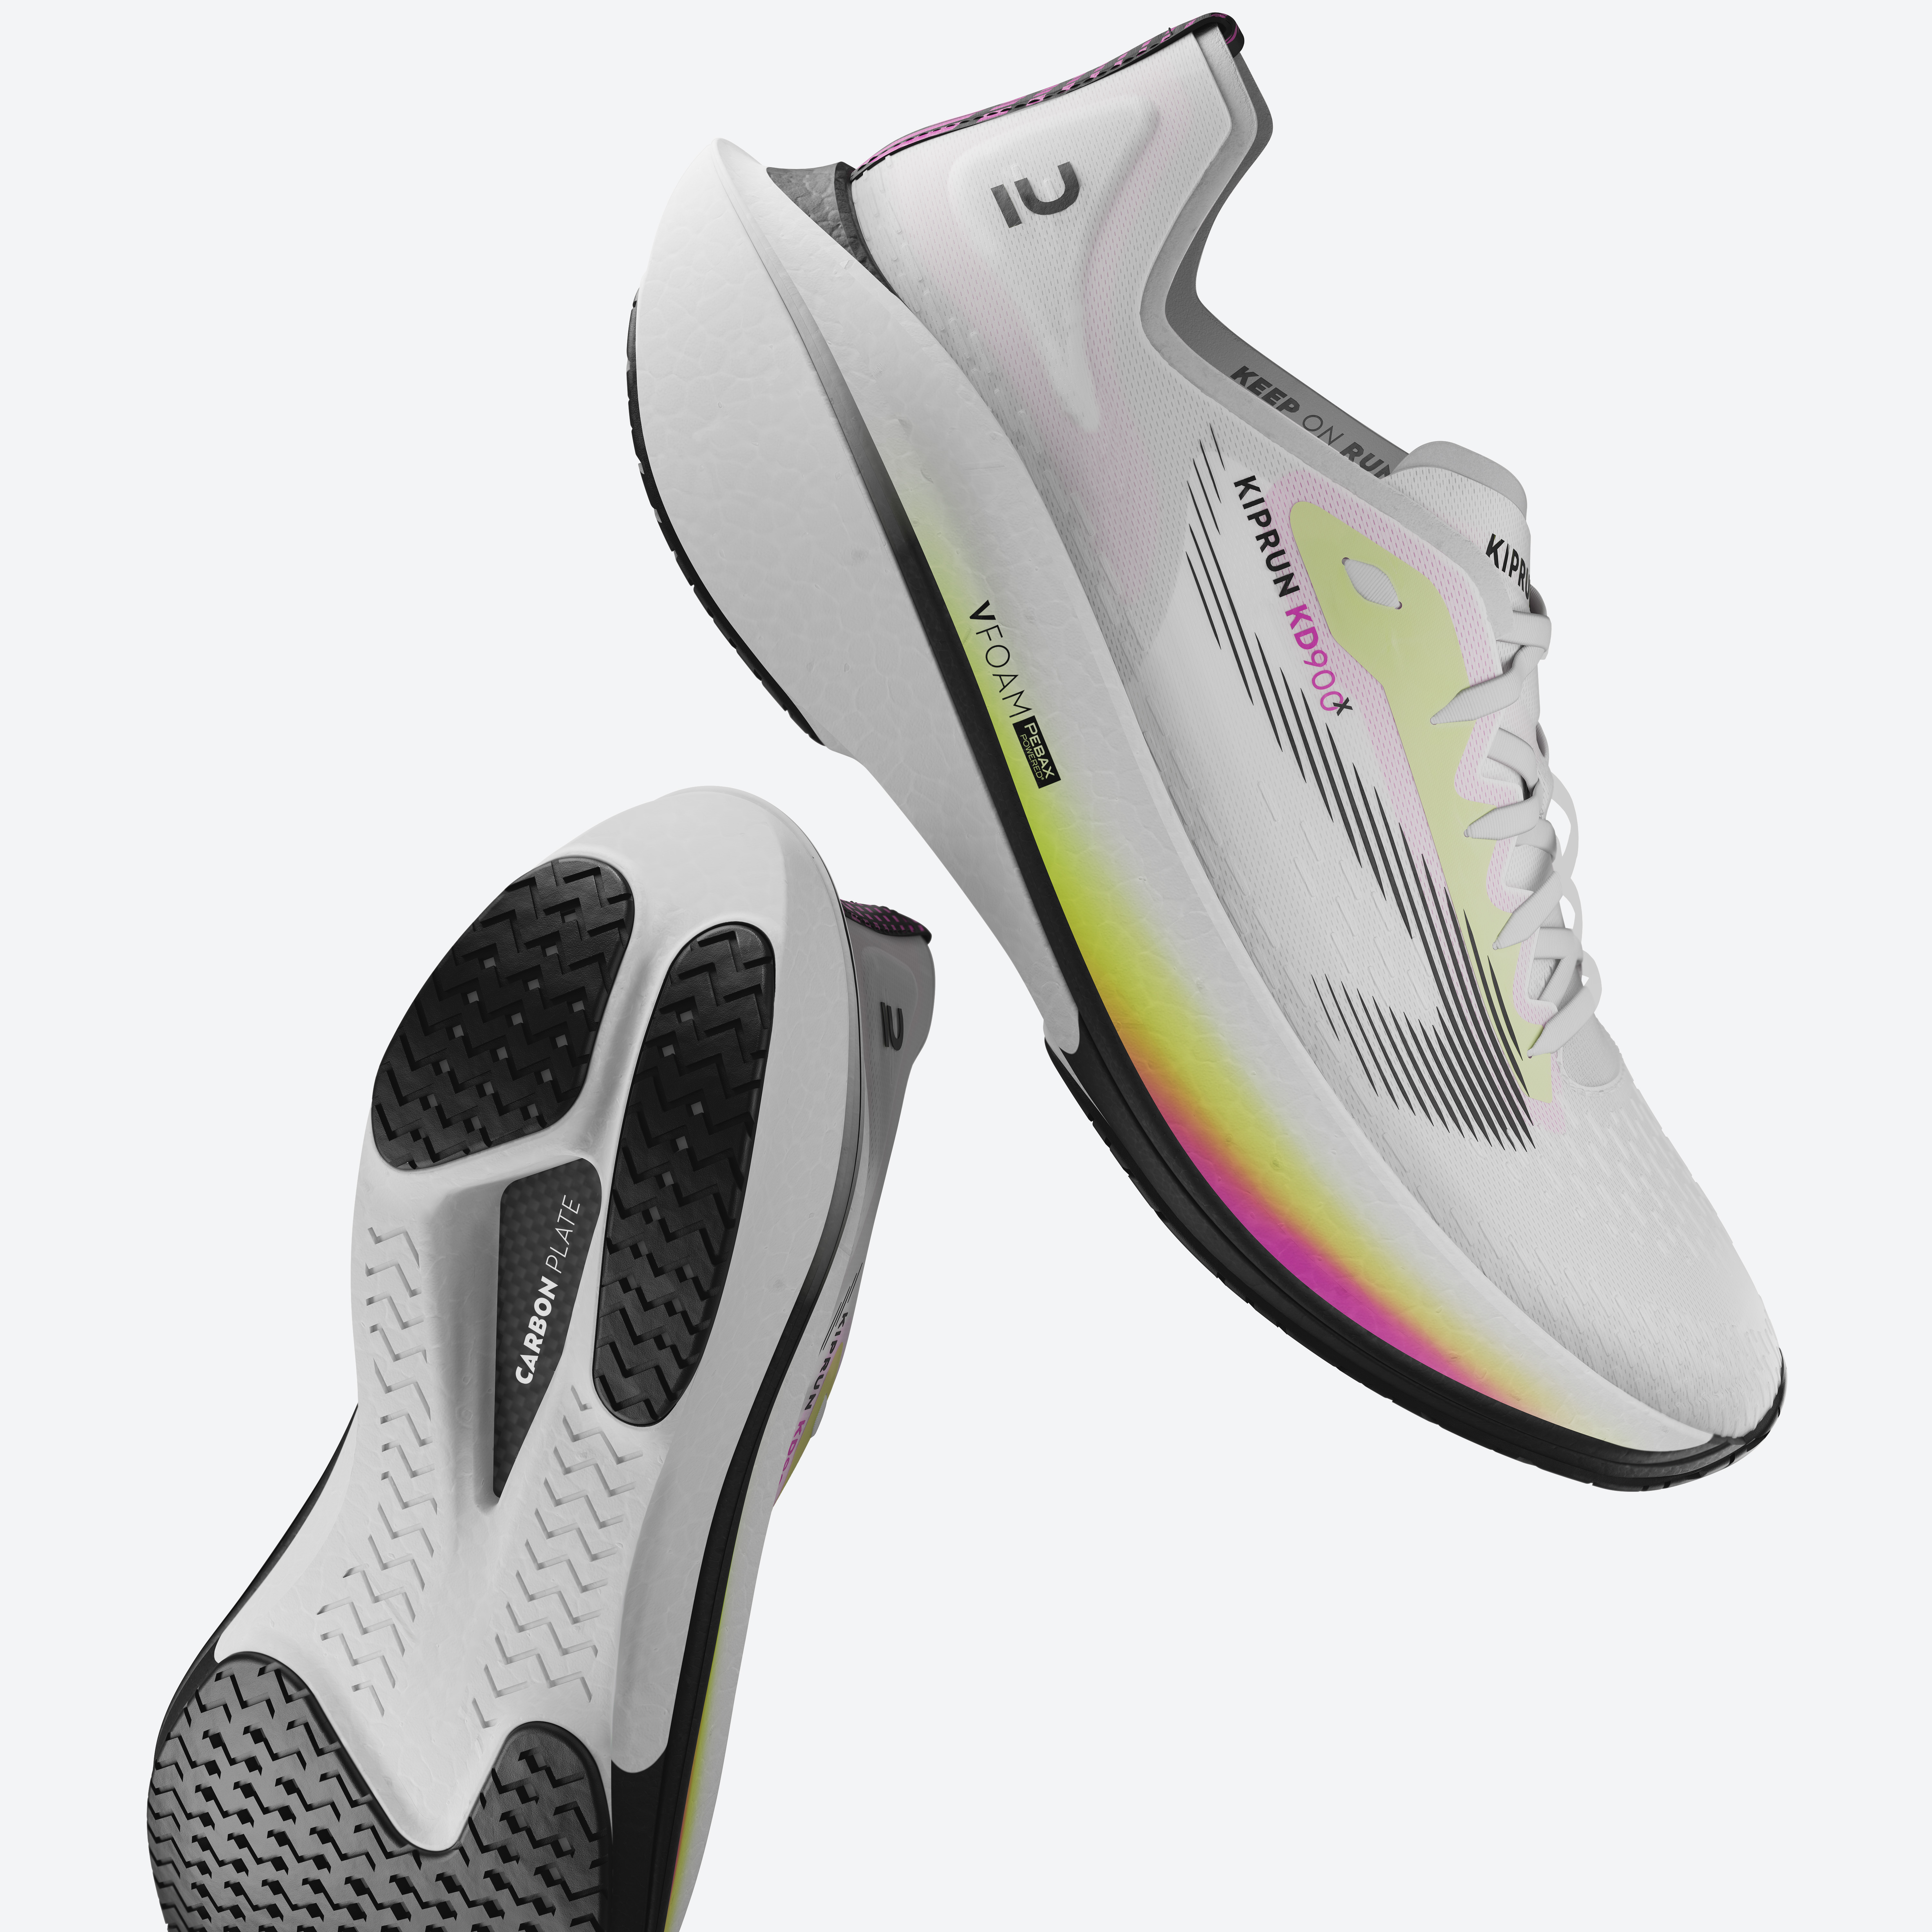 Kiprun KD900X : On a testé la première chaussure running à plaque carbone  de Decathlon